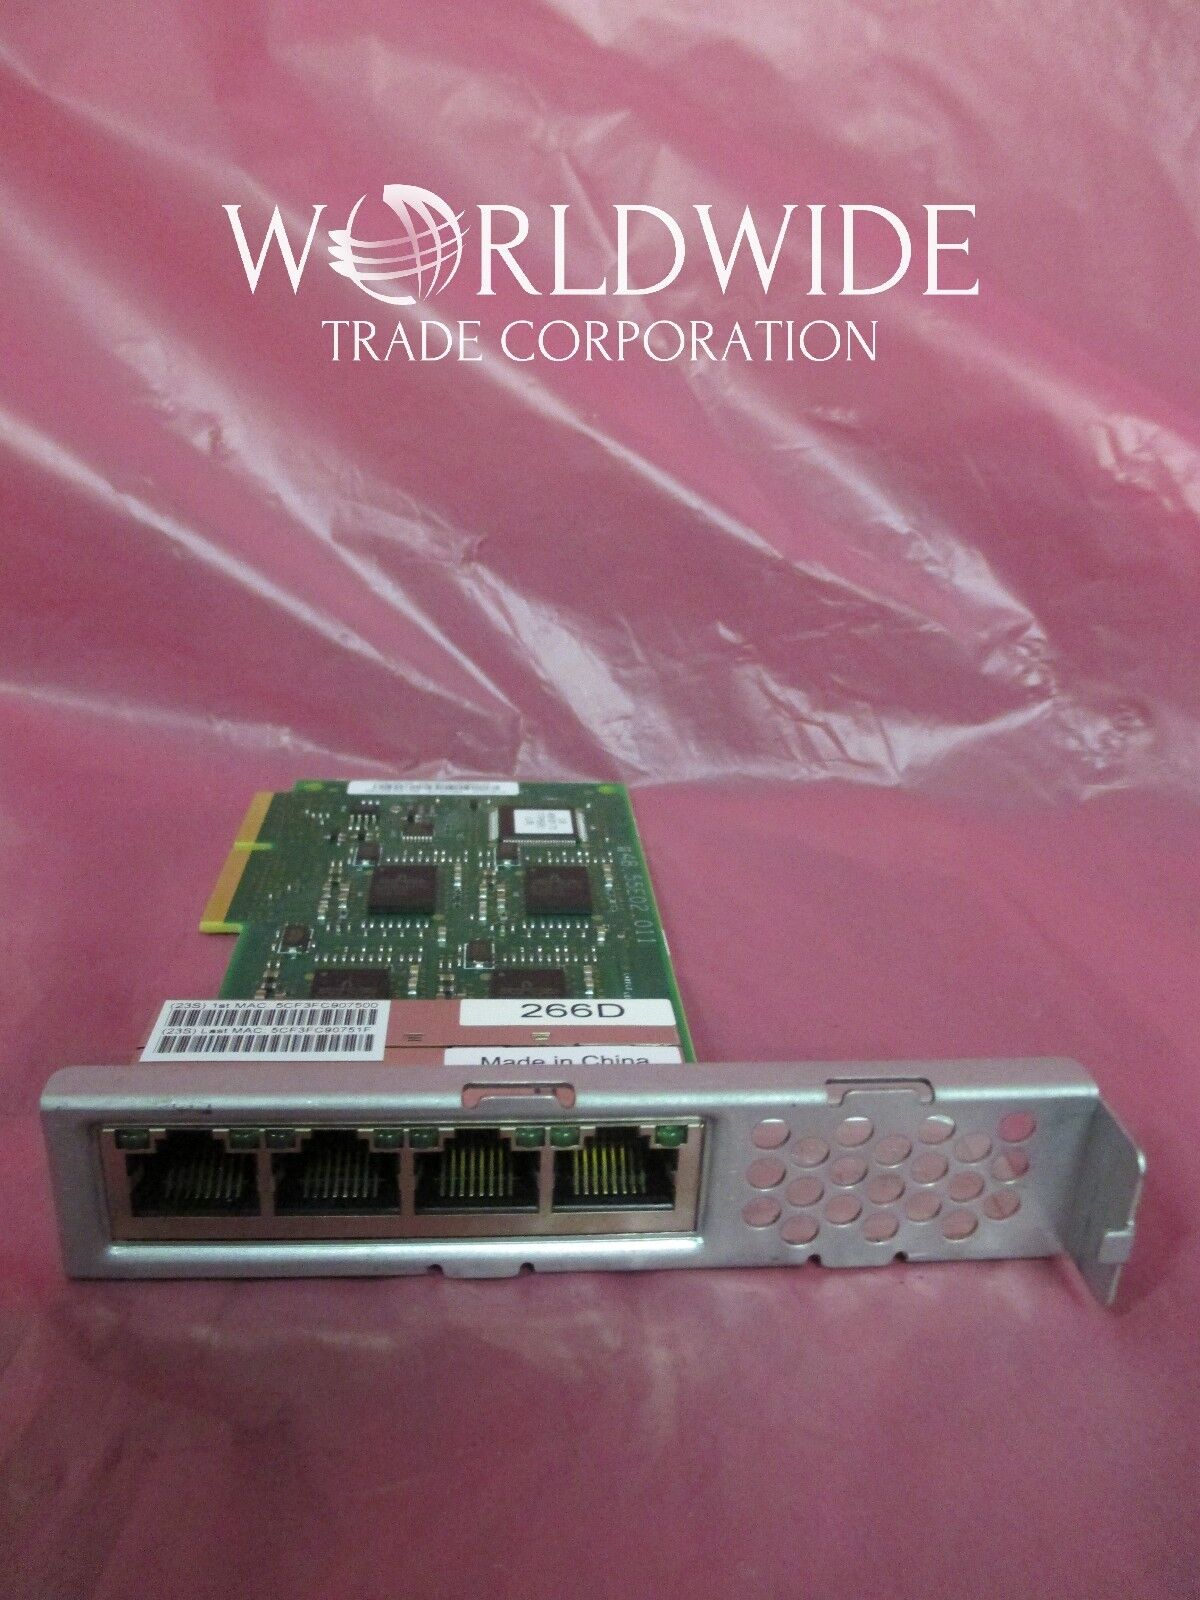 IBM 00E1380 FC#1824 266D 1Gb Quad-Port IVEHEA 4x RJ-45 8202 E4B 8205 E6B pSeries